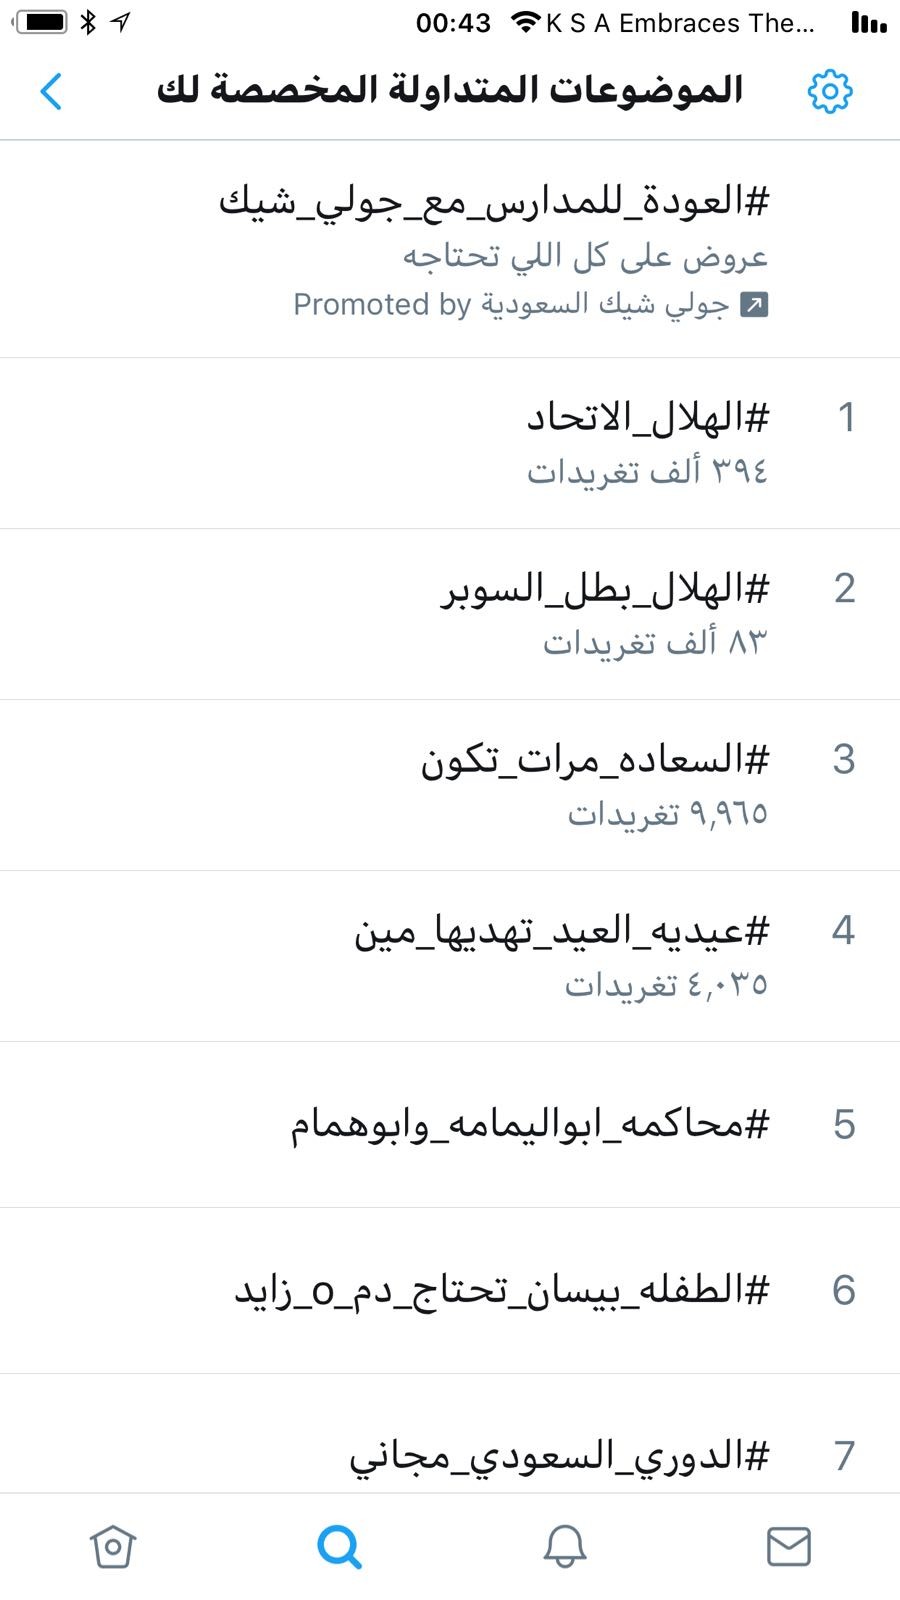 هاشتاق #محاكمة_أبو اليمامة_وبن همام يتصدر في قائمة ترند في محرك تويتر